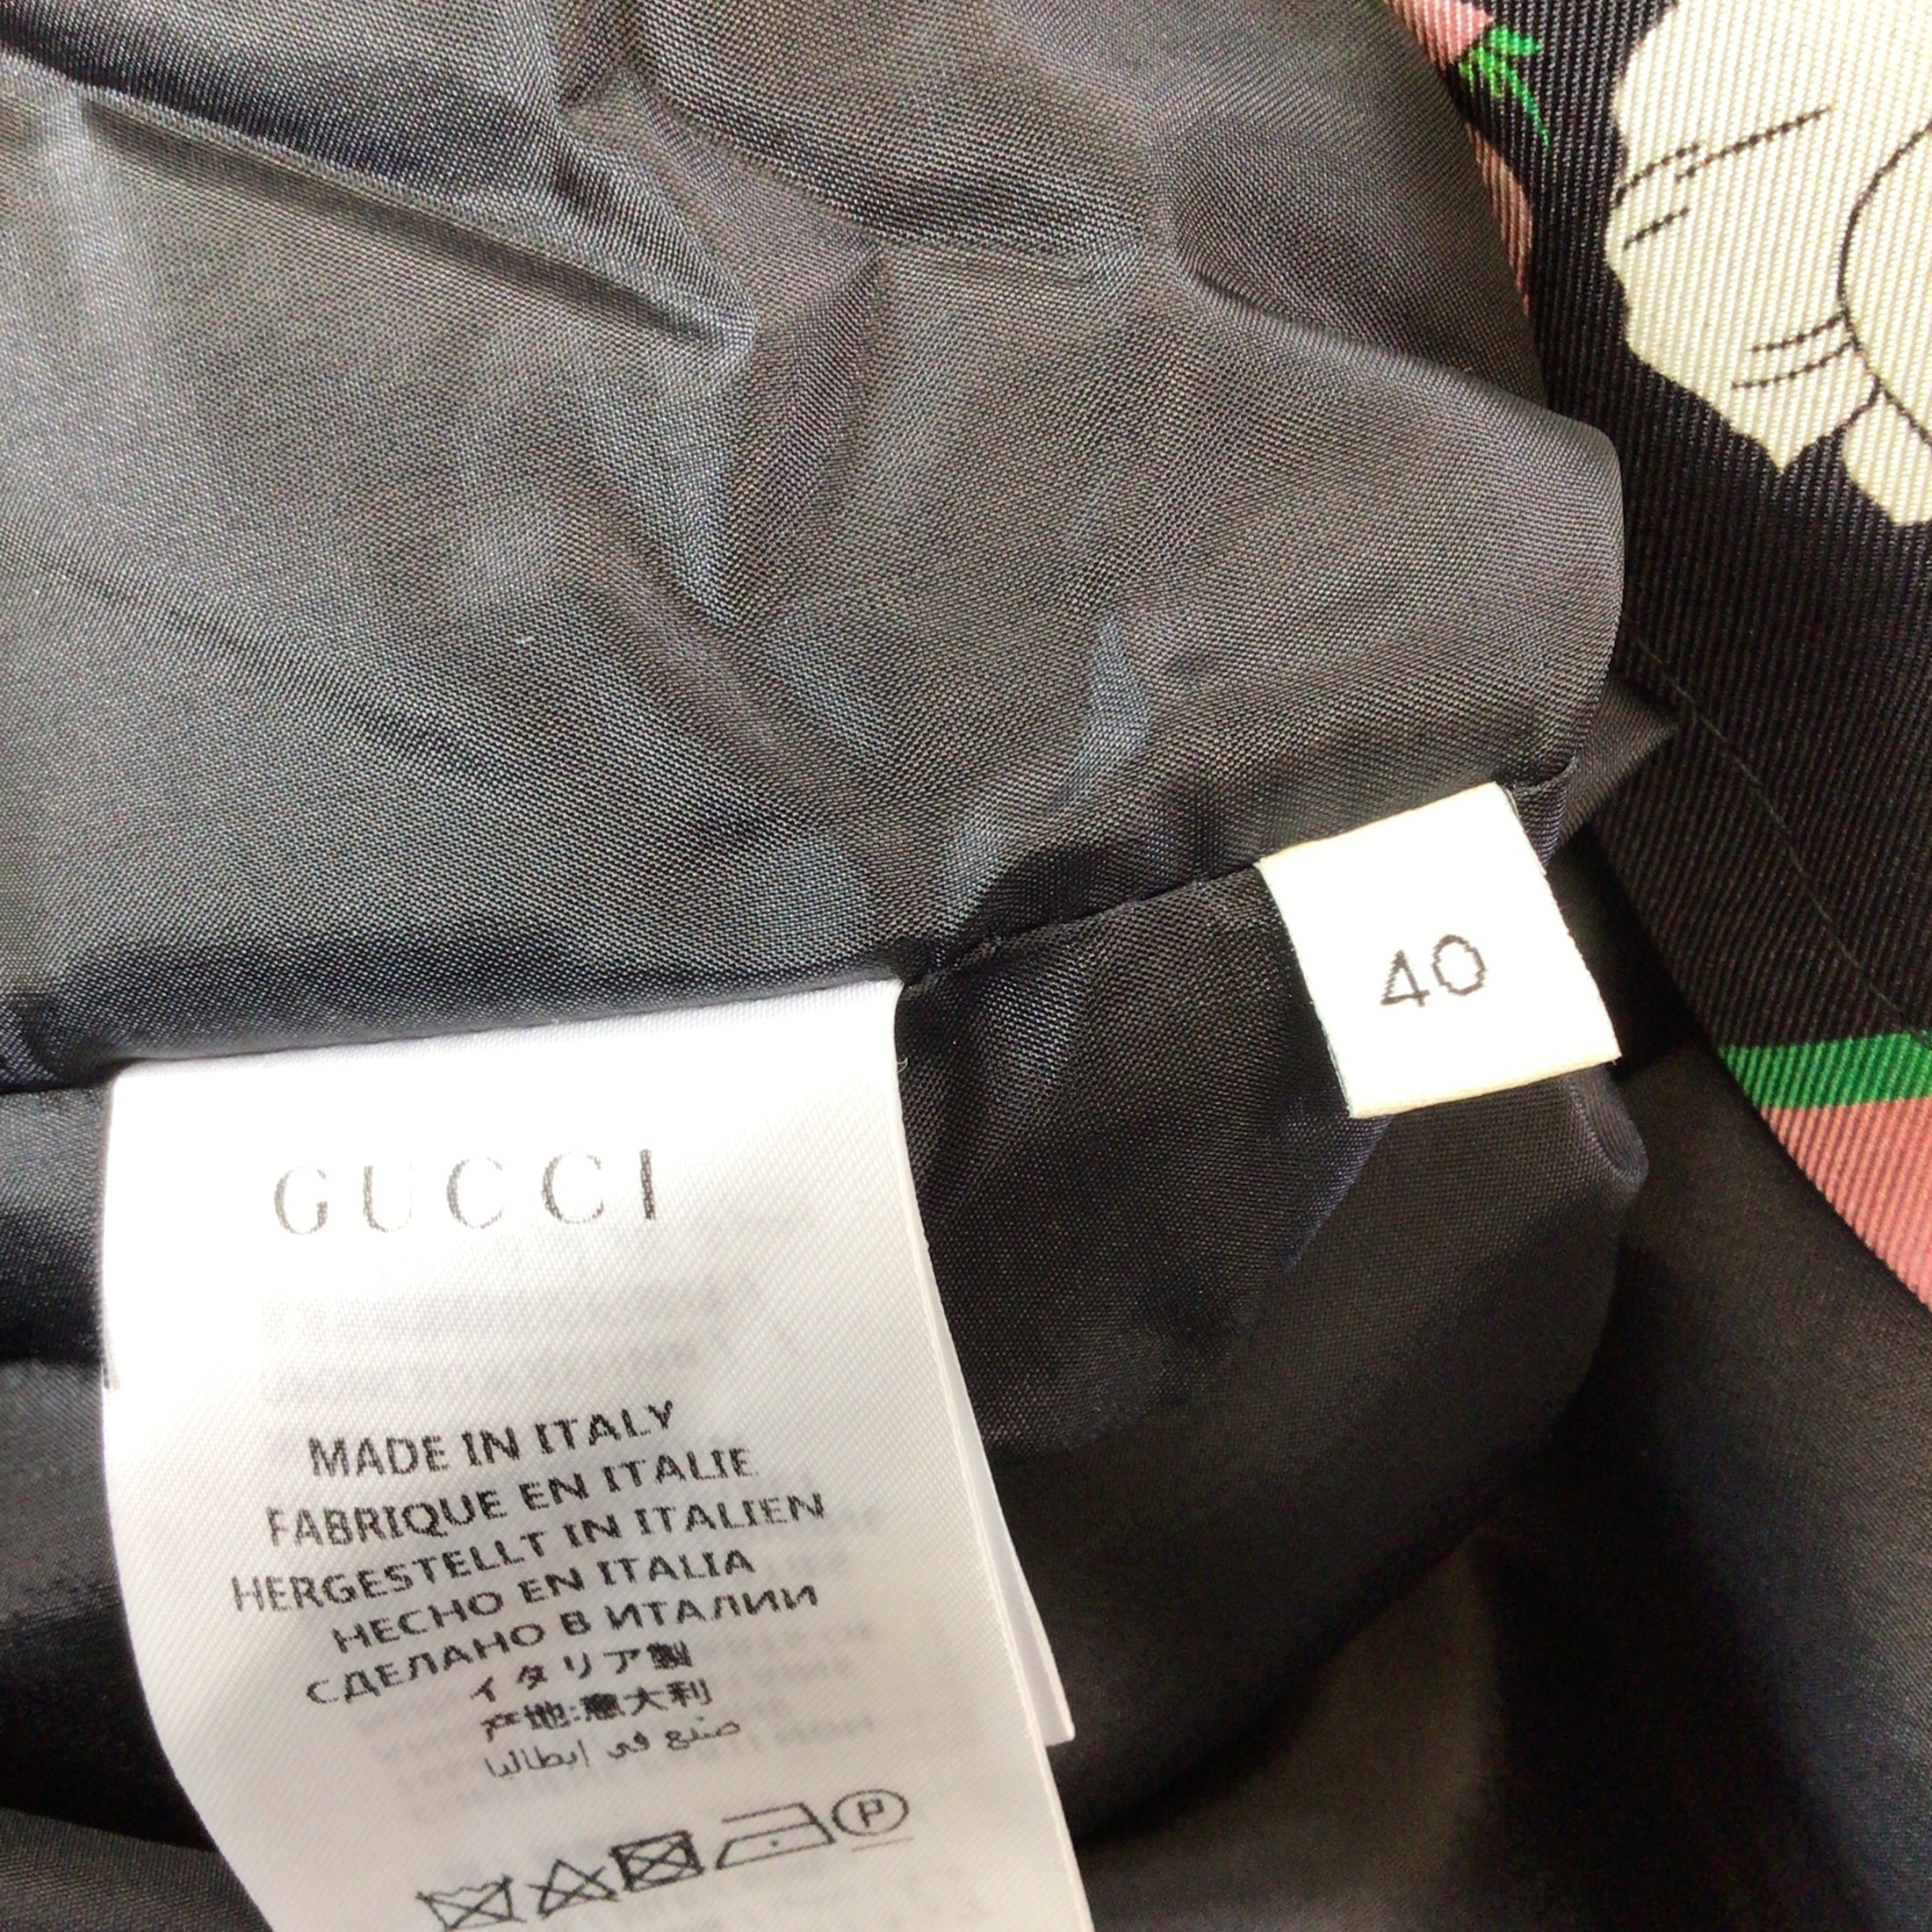 Gucci Black / Pink / Green Multi 2019 Flora Print Silk Jacket